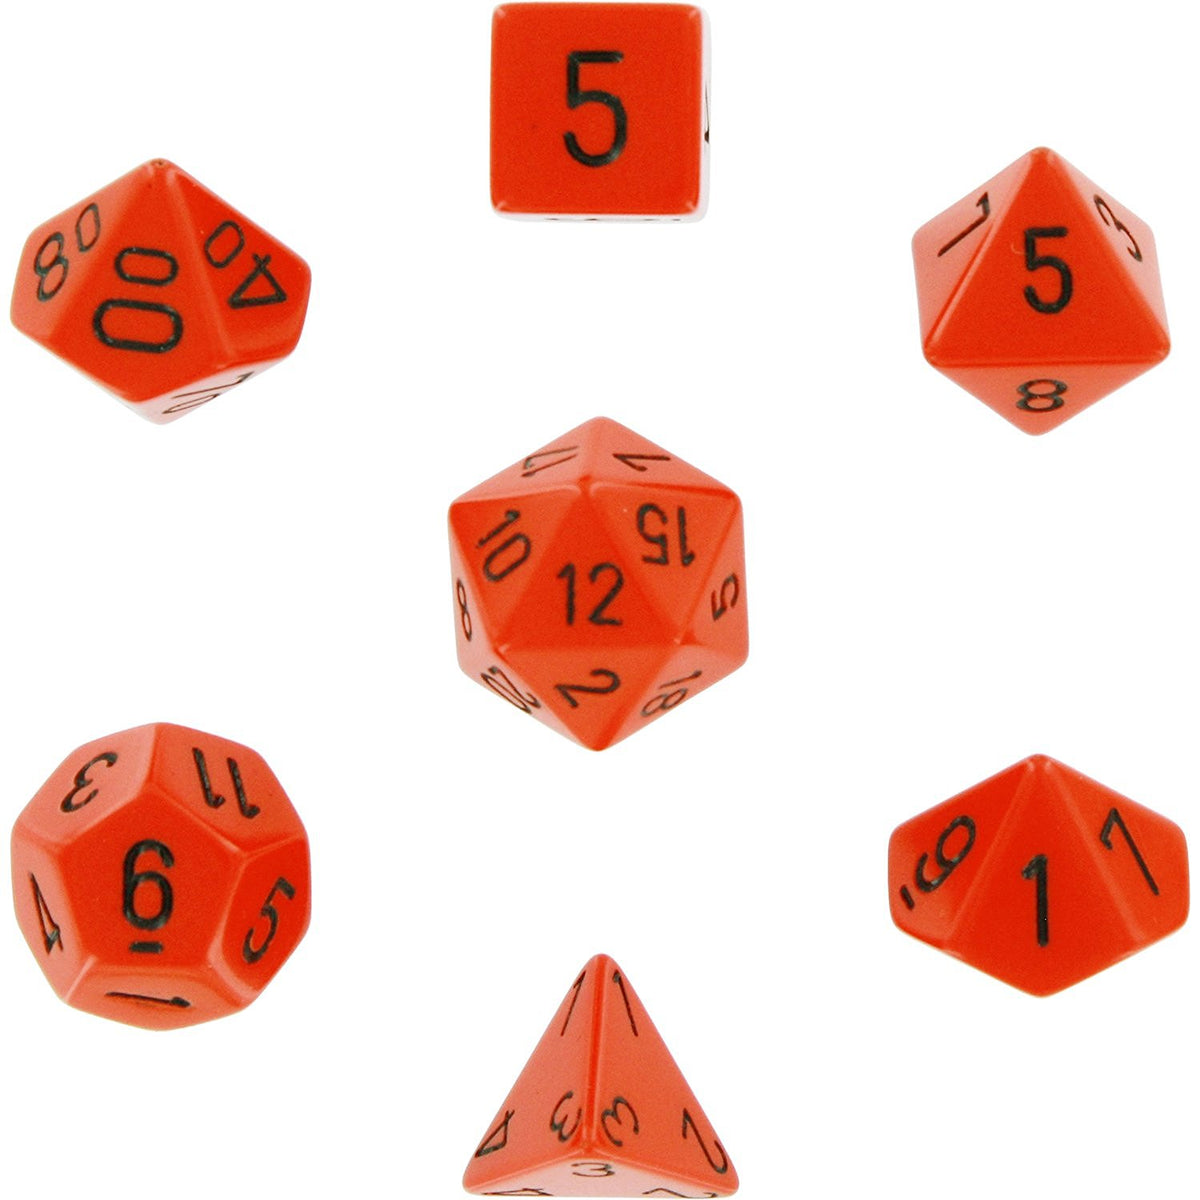 Chessex - Opaque Polyhedral 7-Die Set - Orange/Black (CHX25403)